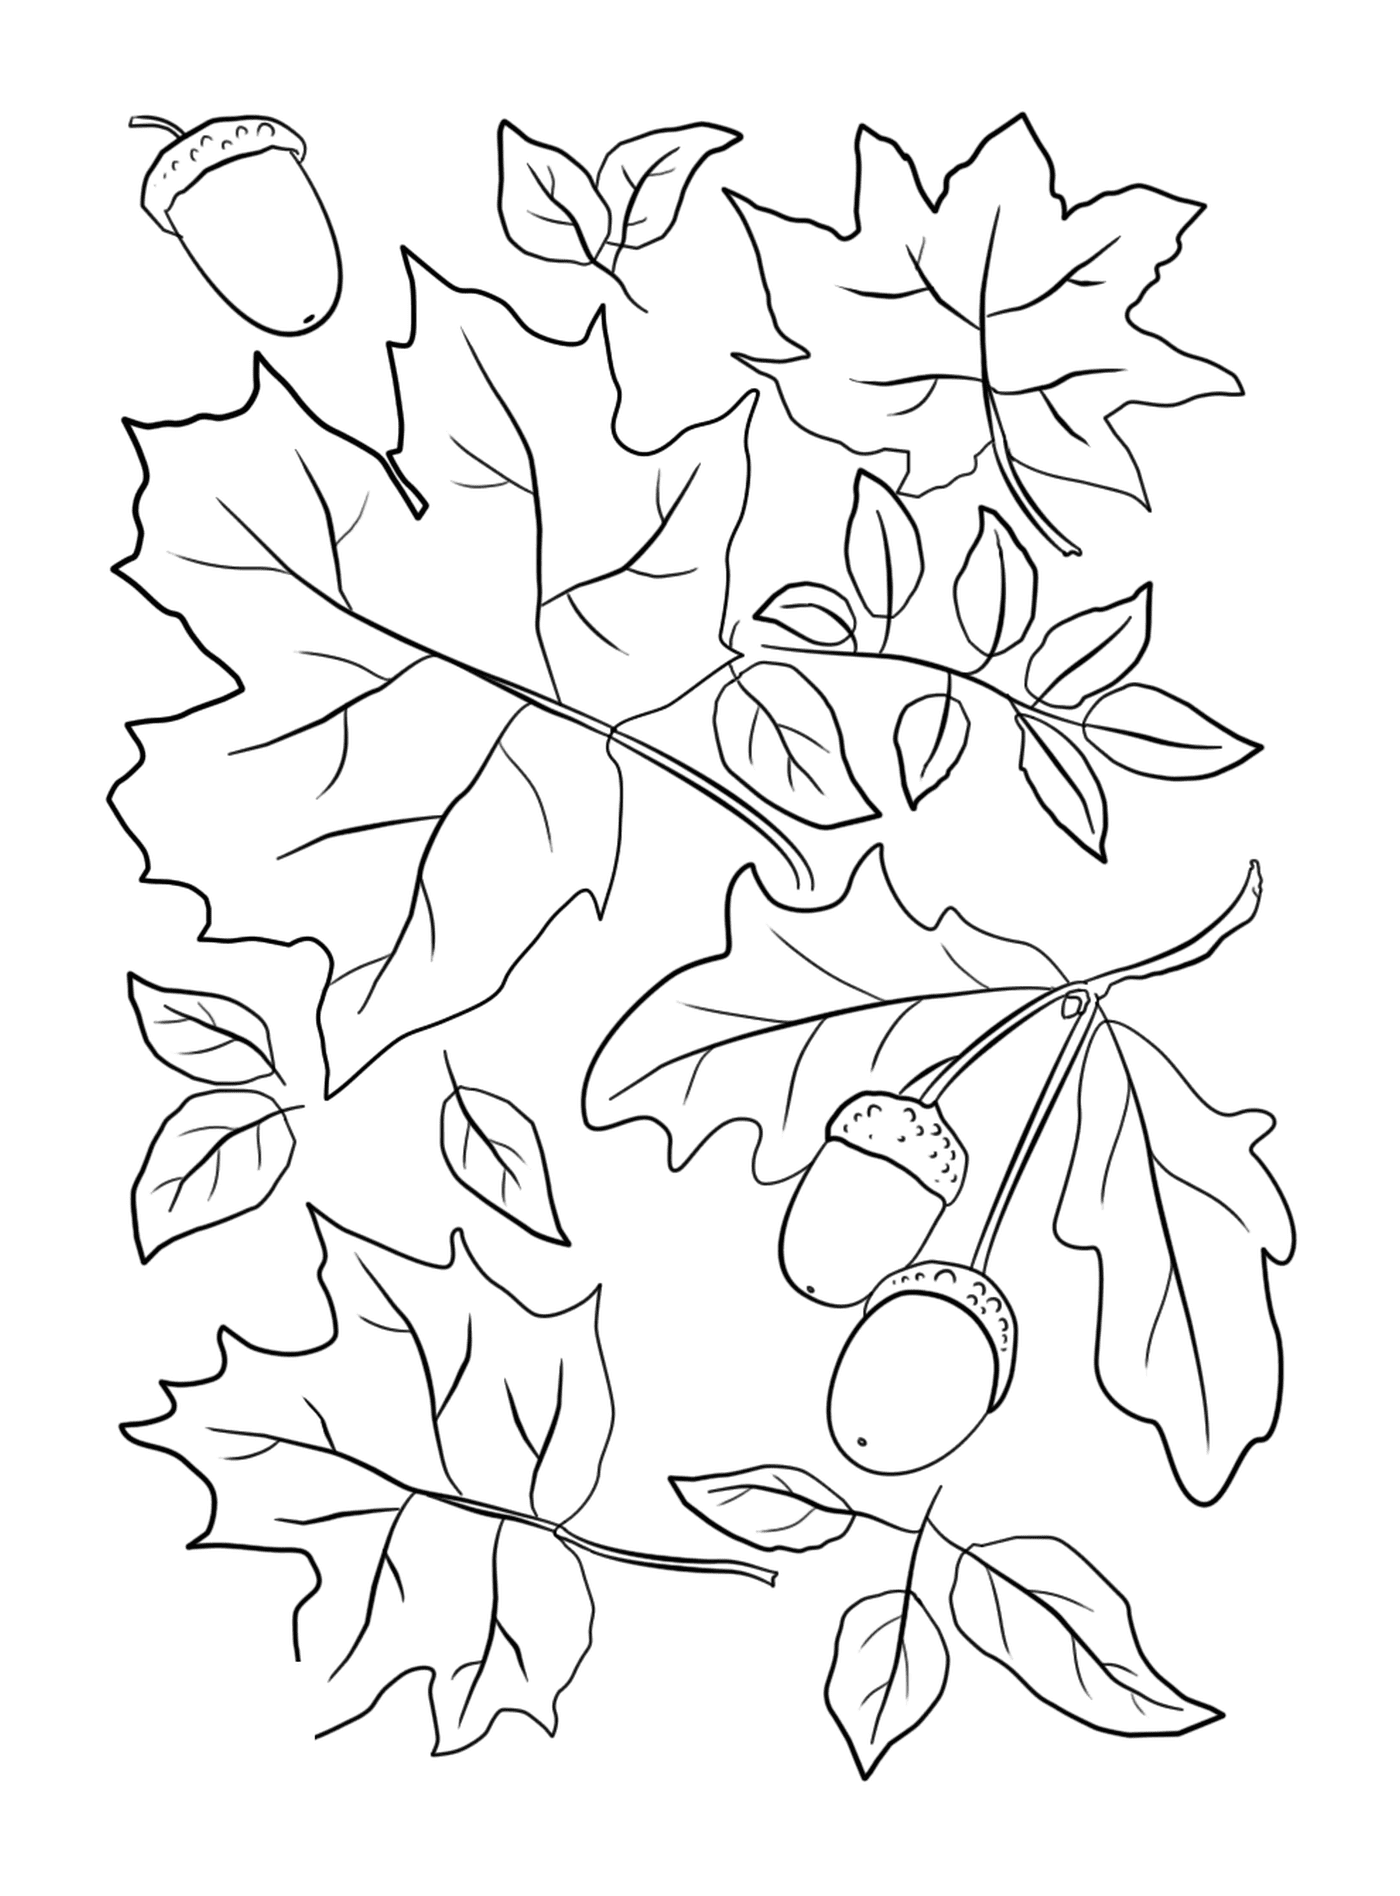  Листья и желудки на осеннем дереве 